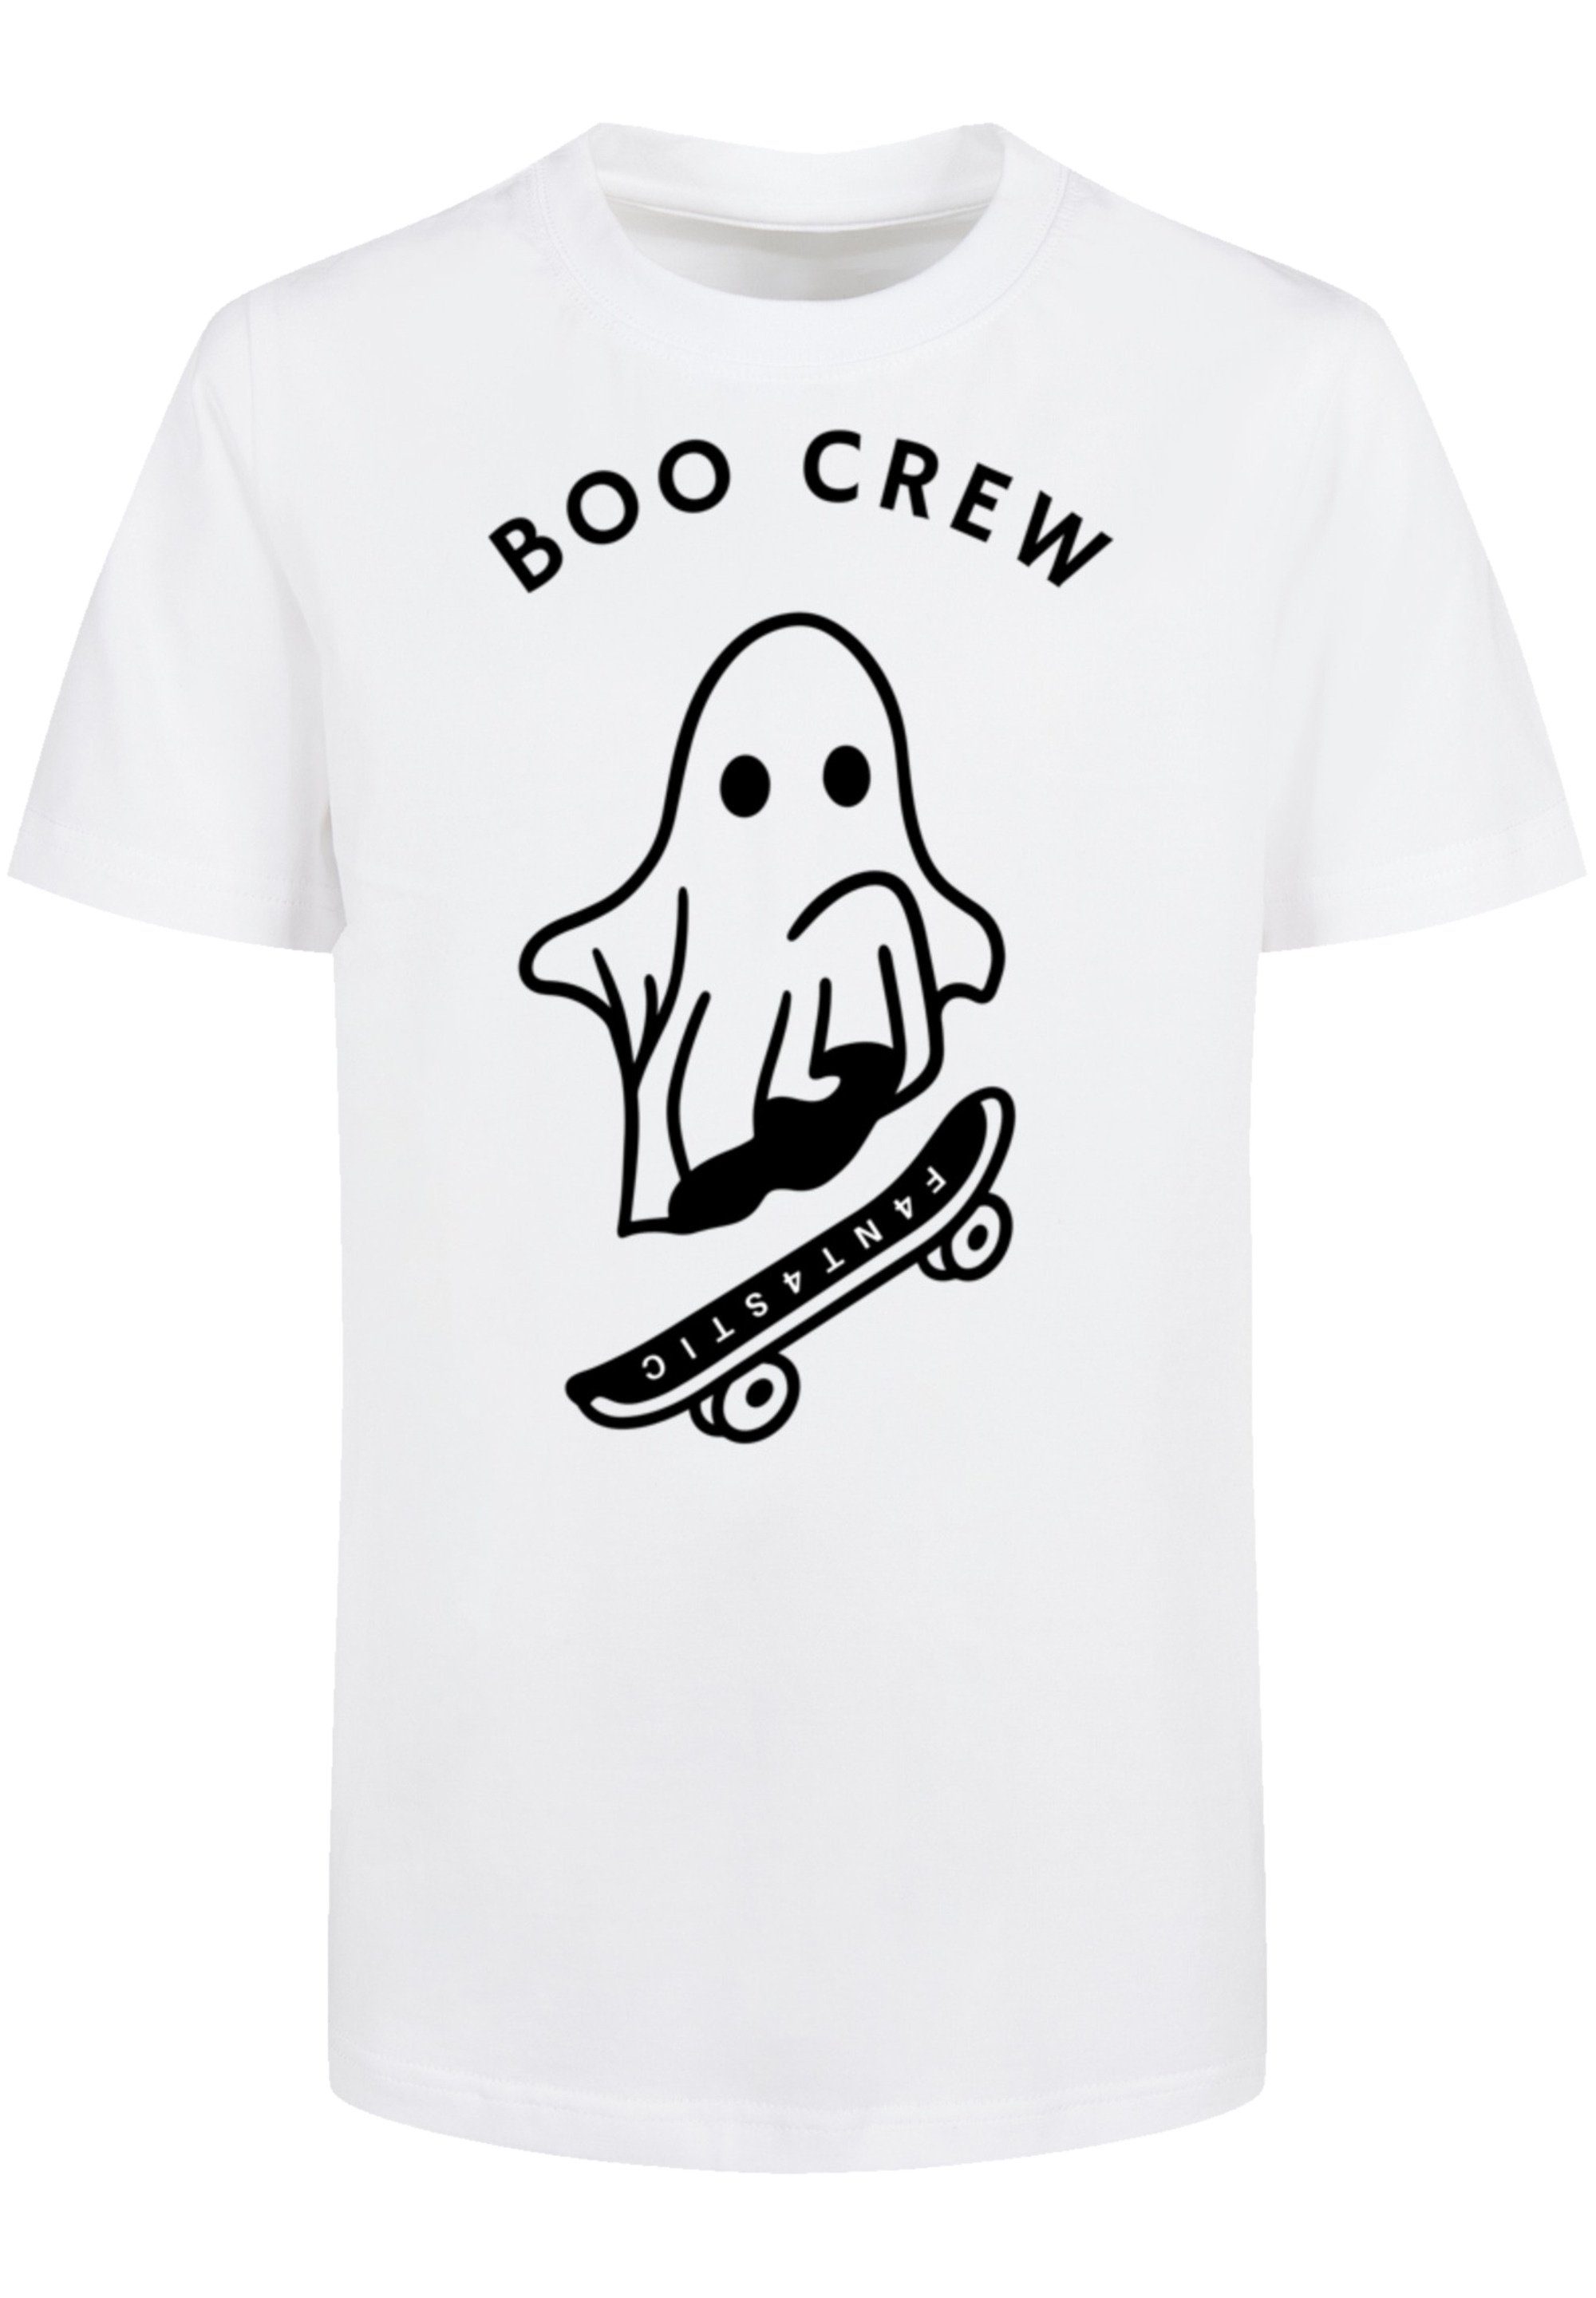 F4NT4STIC T-Shirt Sehr Print, Baumwollstoff Crew Boo hohem Tragekomfort Halloween weicher mit